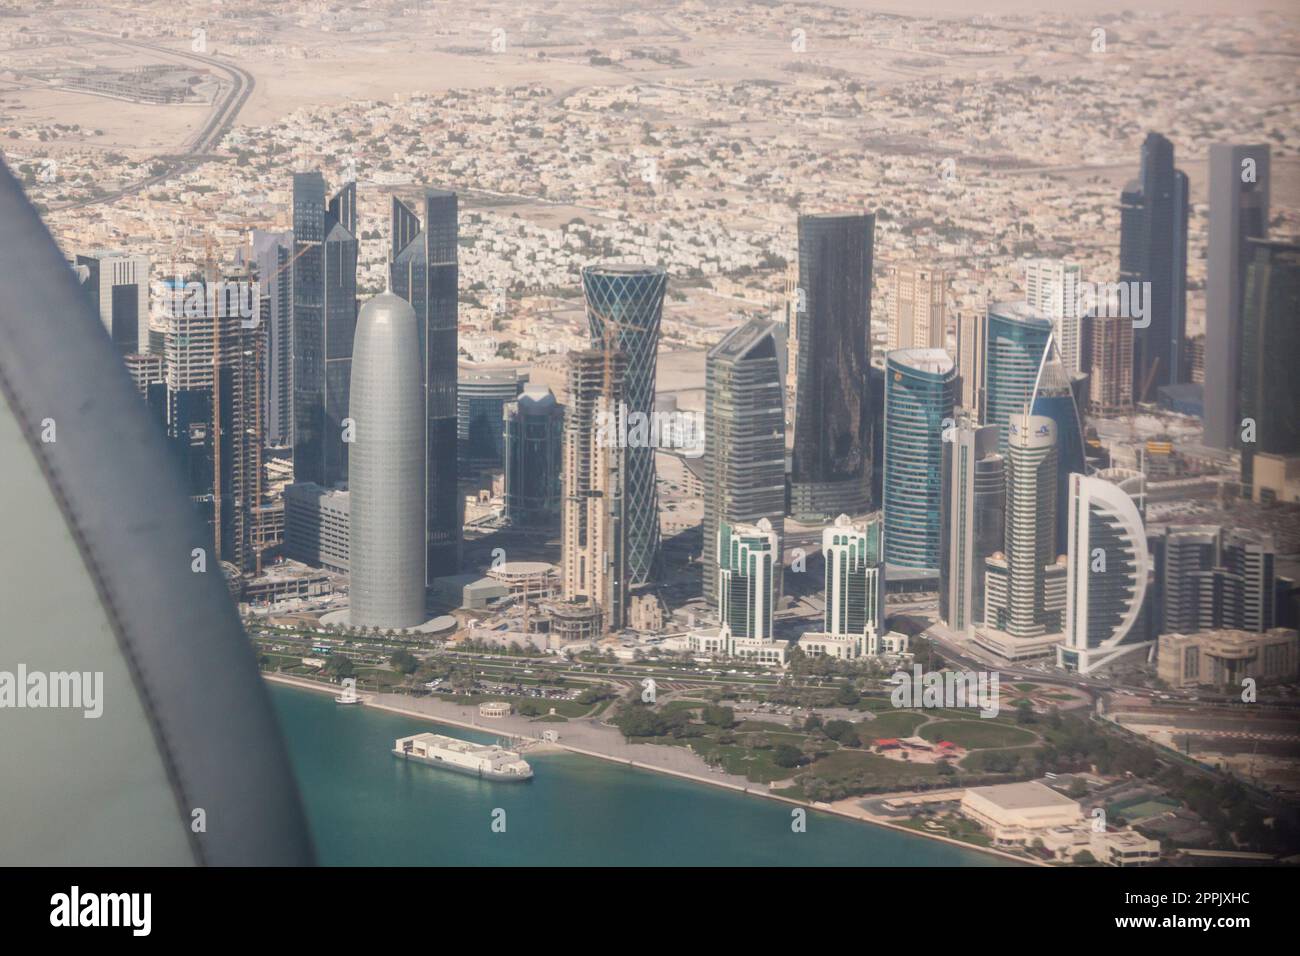 Vue aérienne de Doha à travers la fenêtre d'avion, capitale du Qatar dans le golfe Persique Banque D'Images